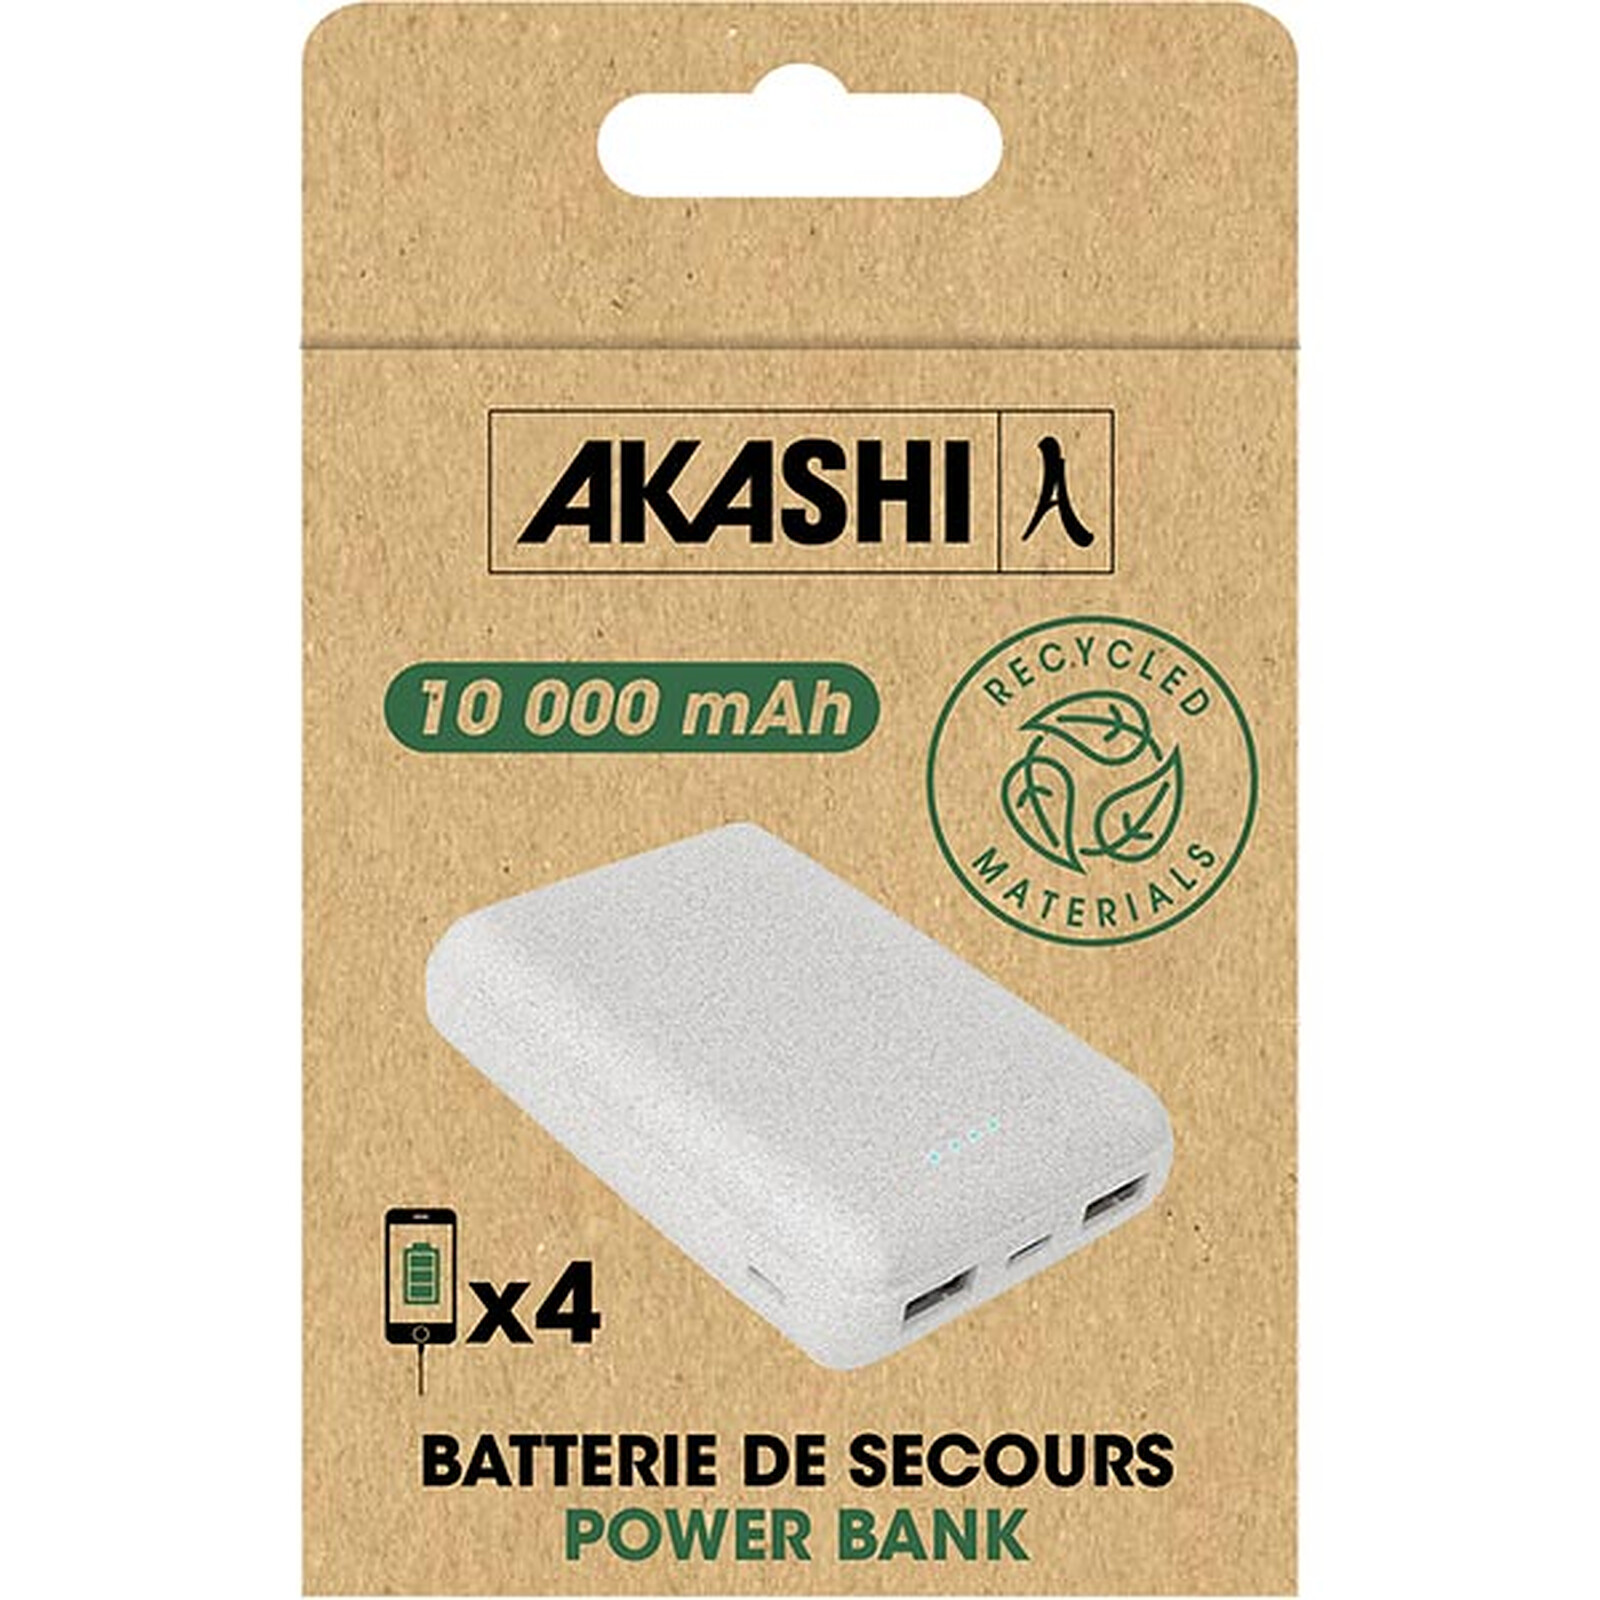 Akashi Batterie de Secours 10000 mAh Eco - Batterie externe - LDLC